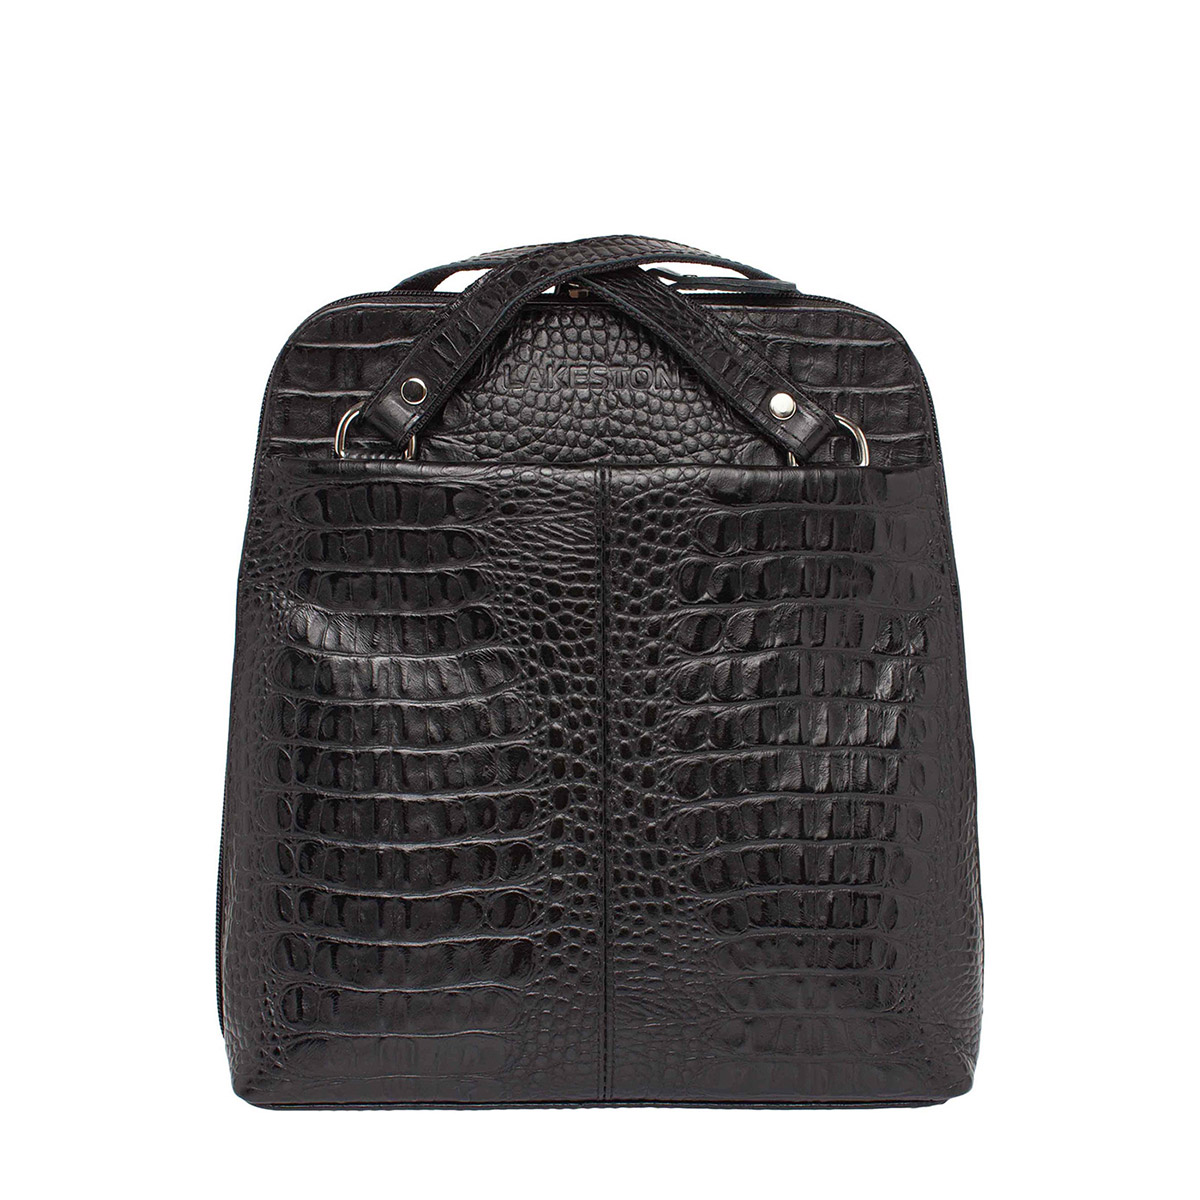 "Lakestone" Компактный женский рюкзак-трансформер Eden Black Caiman